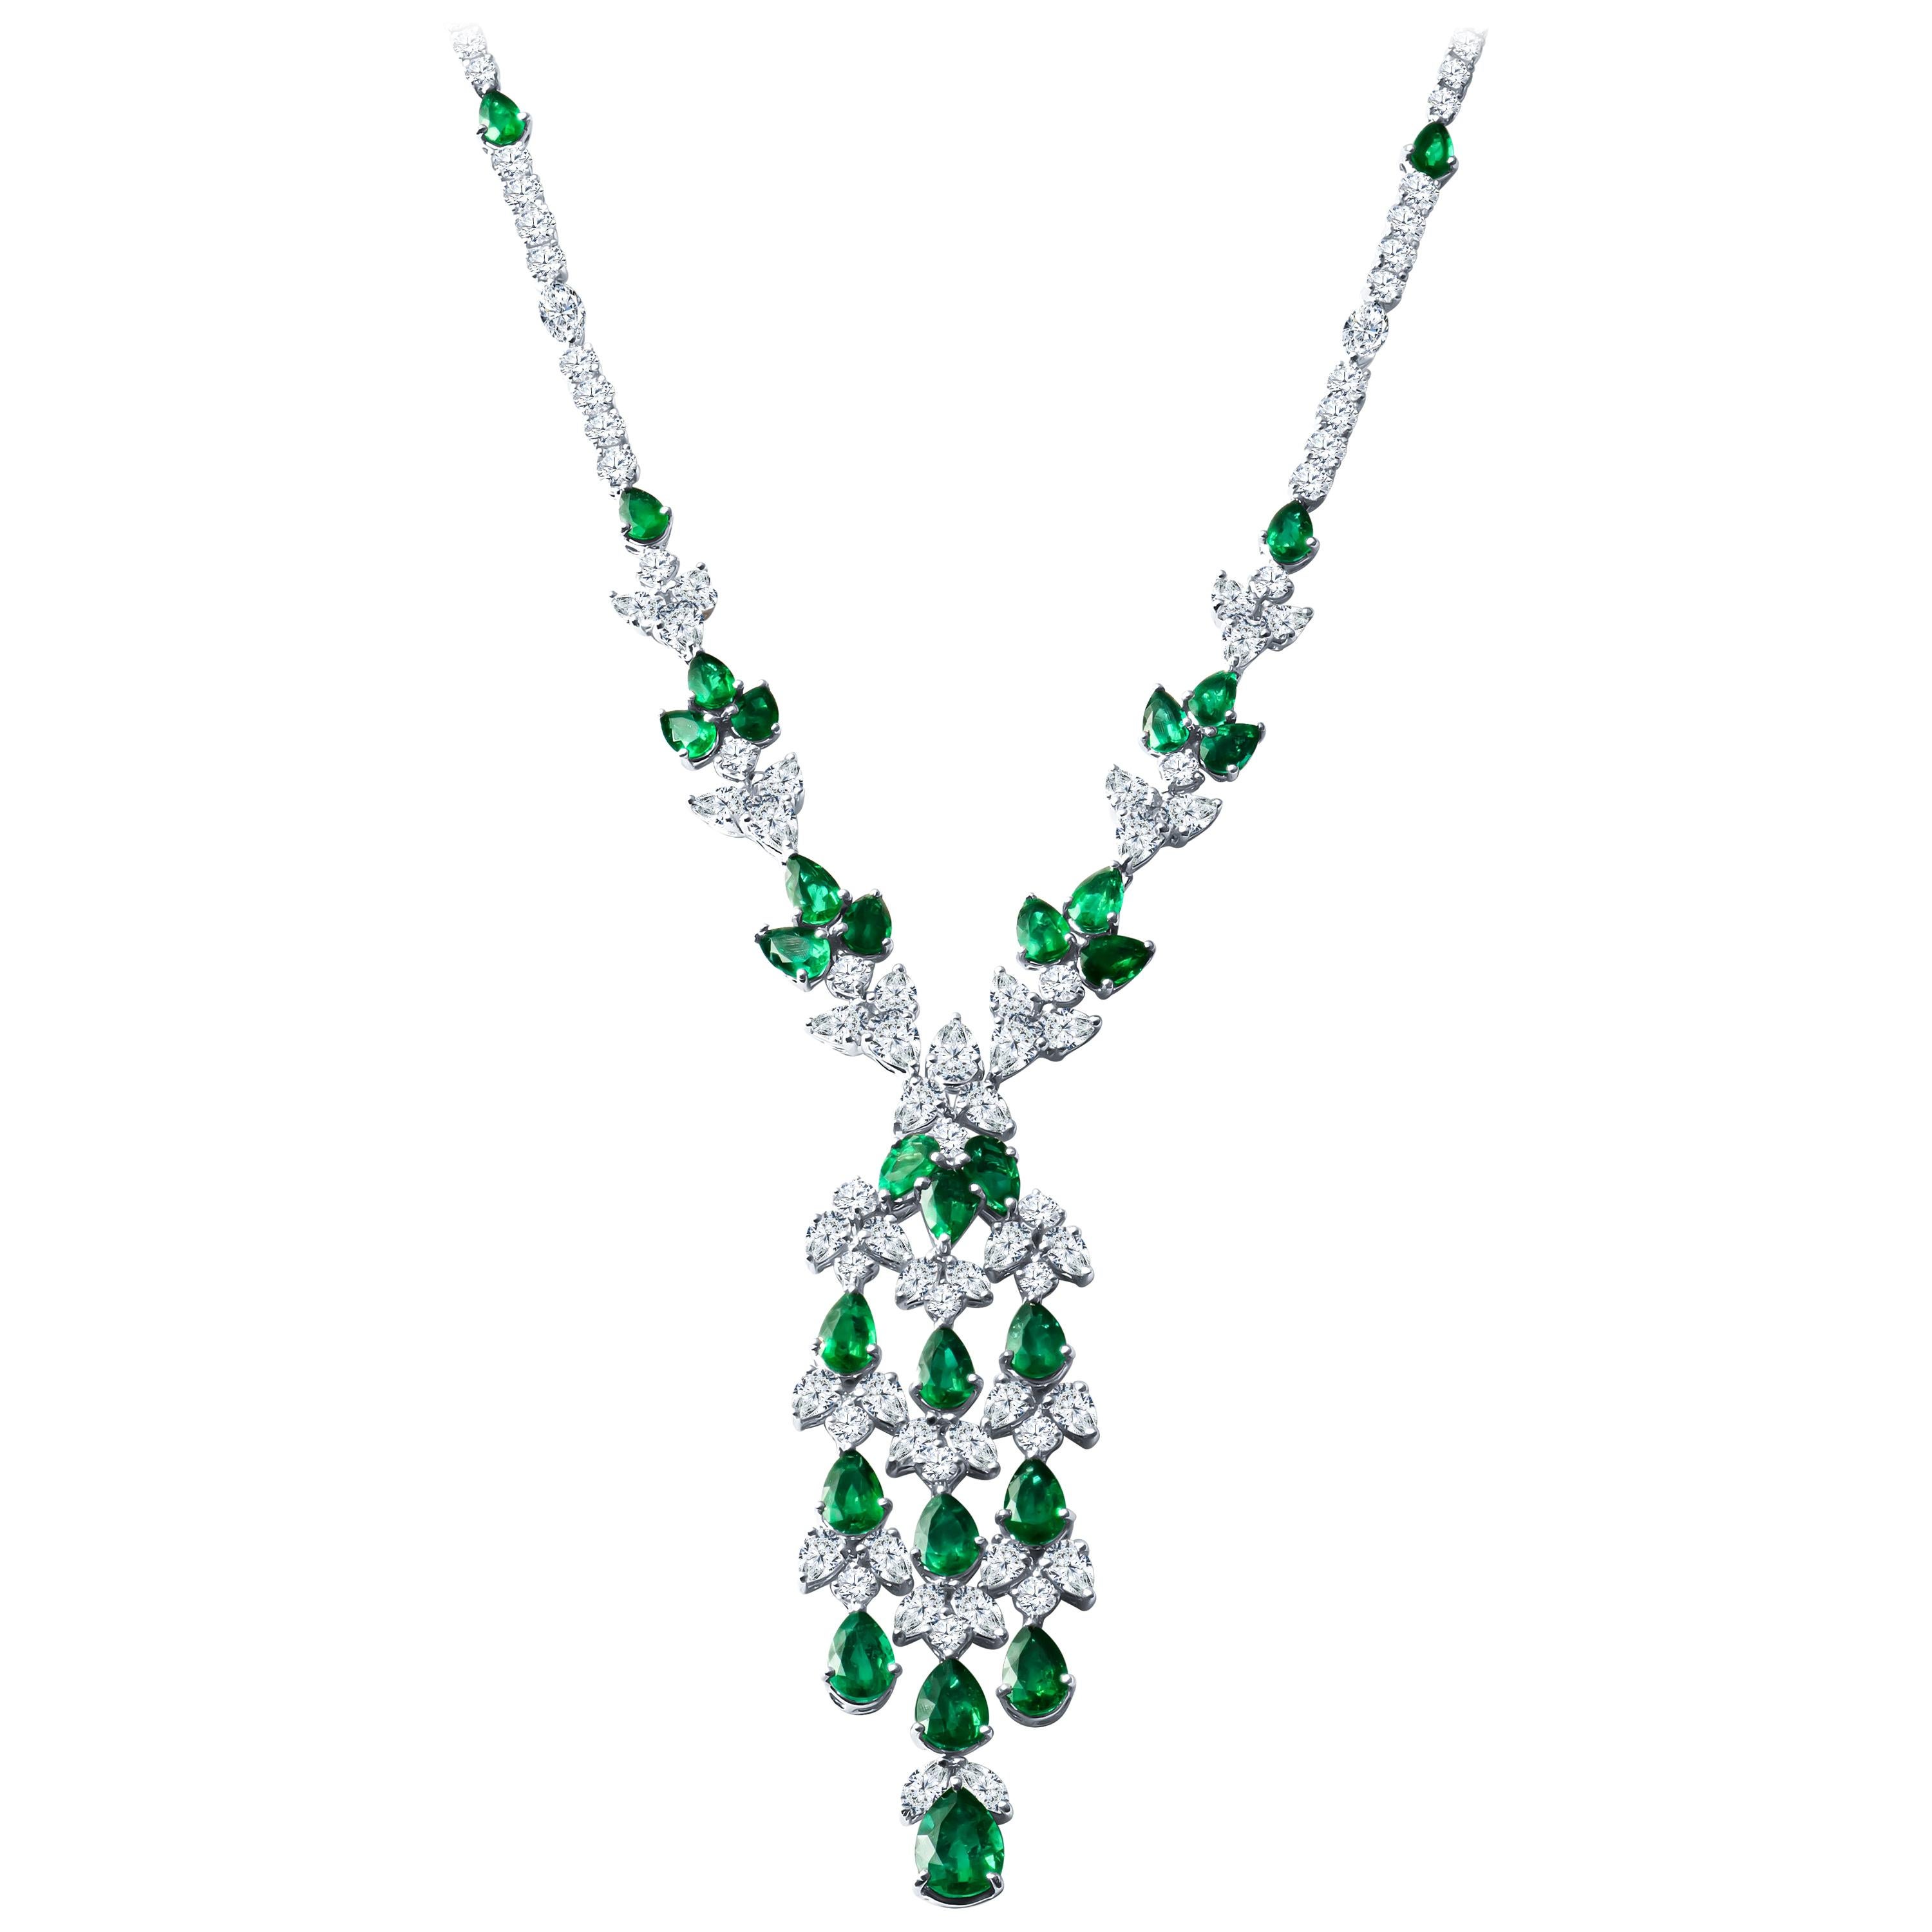 21.77 Carat Pear Shape Emerald and 25.04 Carat Diamond Vine Necklace